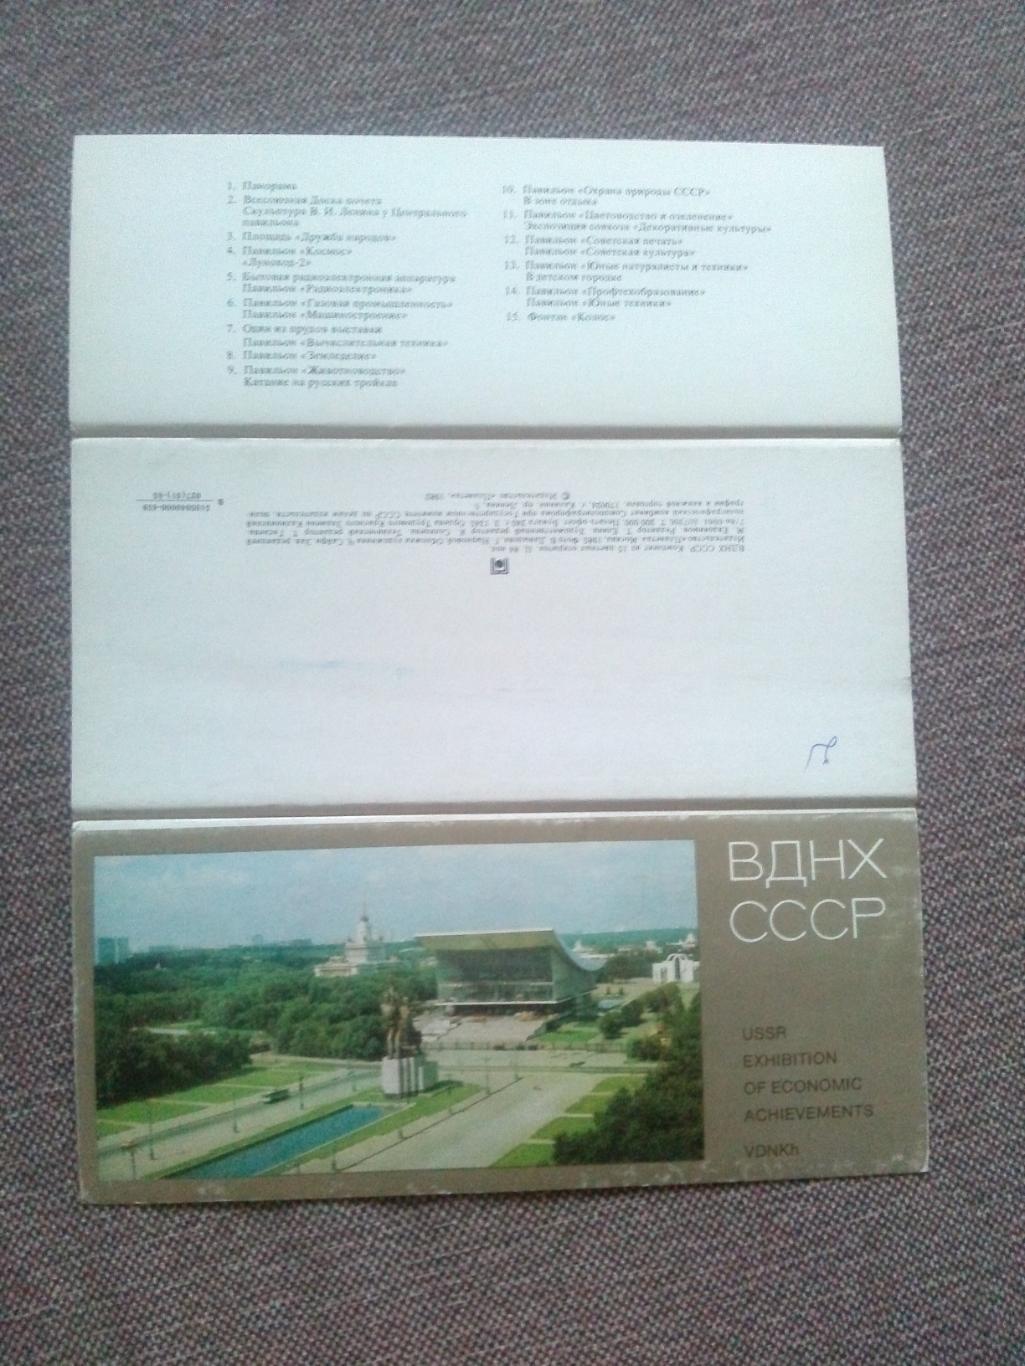 Памятные места СССР : ВДНХ СССР 1985 г. полный набор - 15 открыток (Выставка) 1